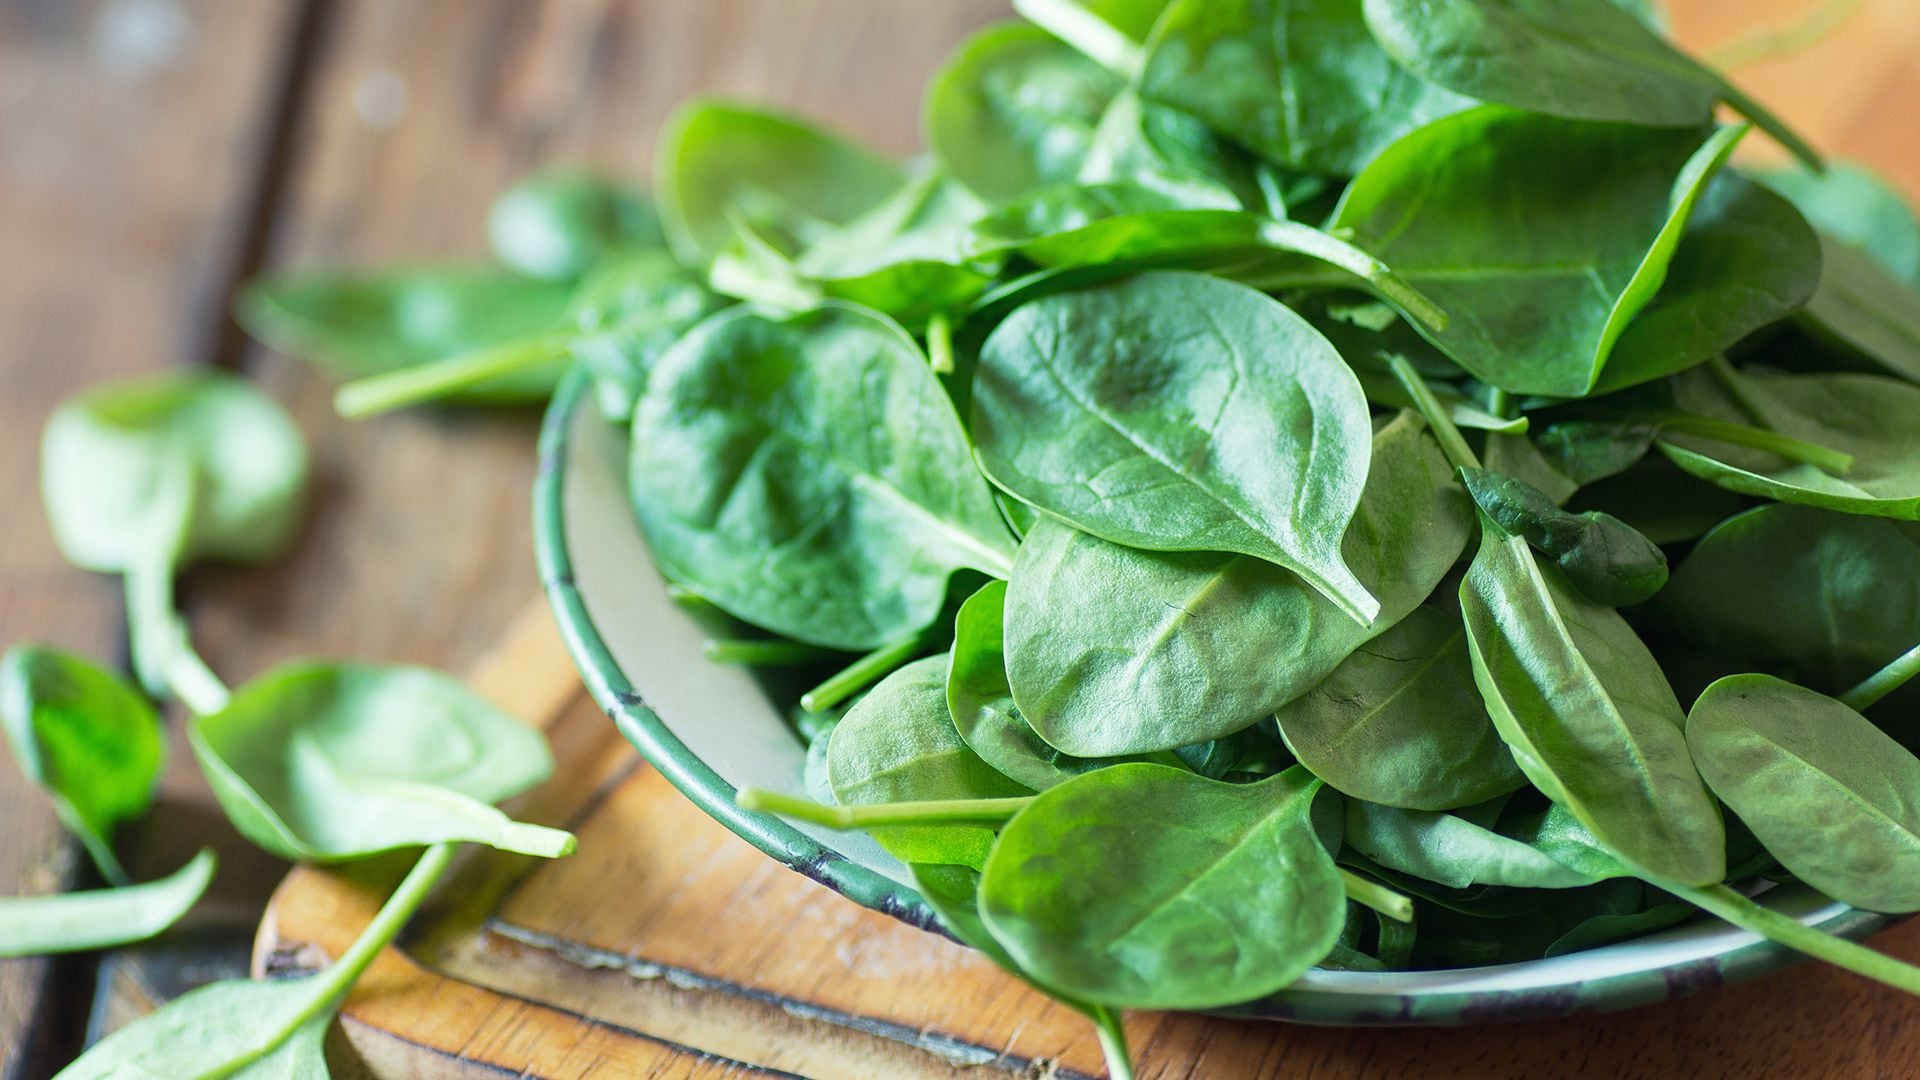  La mayor parte del magnesio en la dieta proviene de los vegetales, como las verduras de hoja verde oscura (iStock)